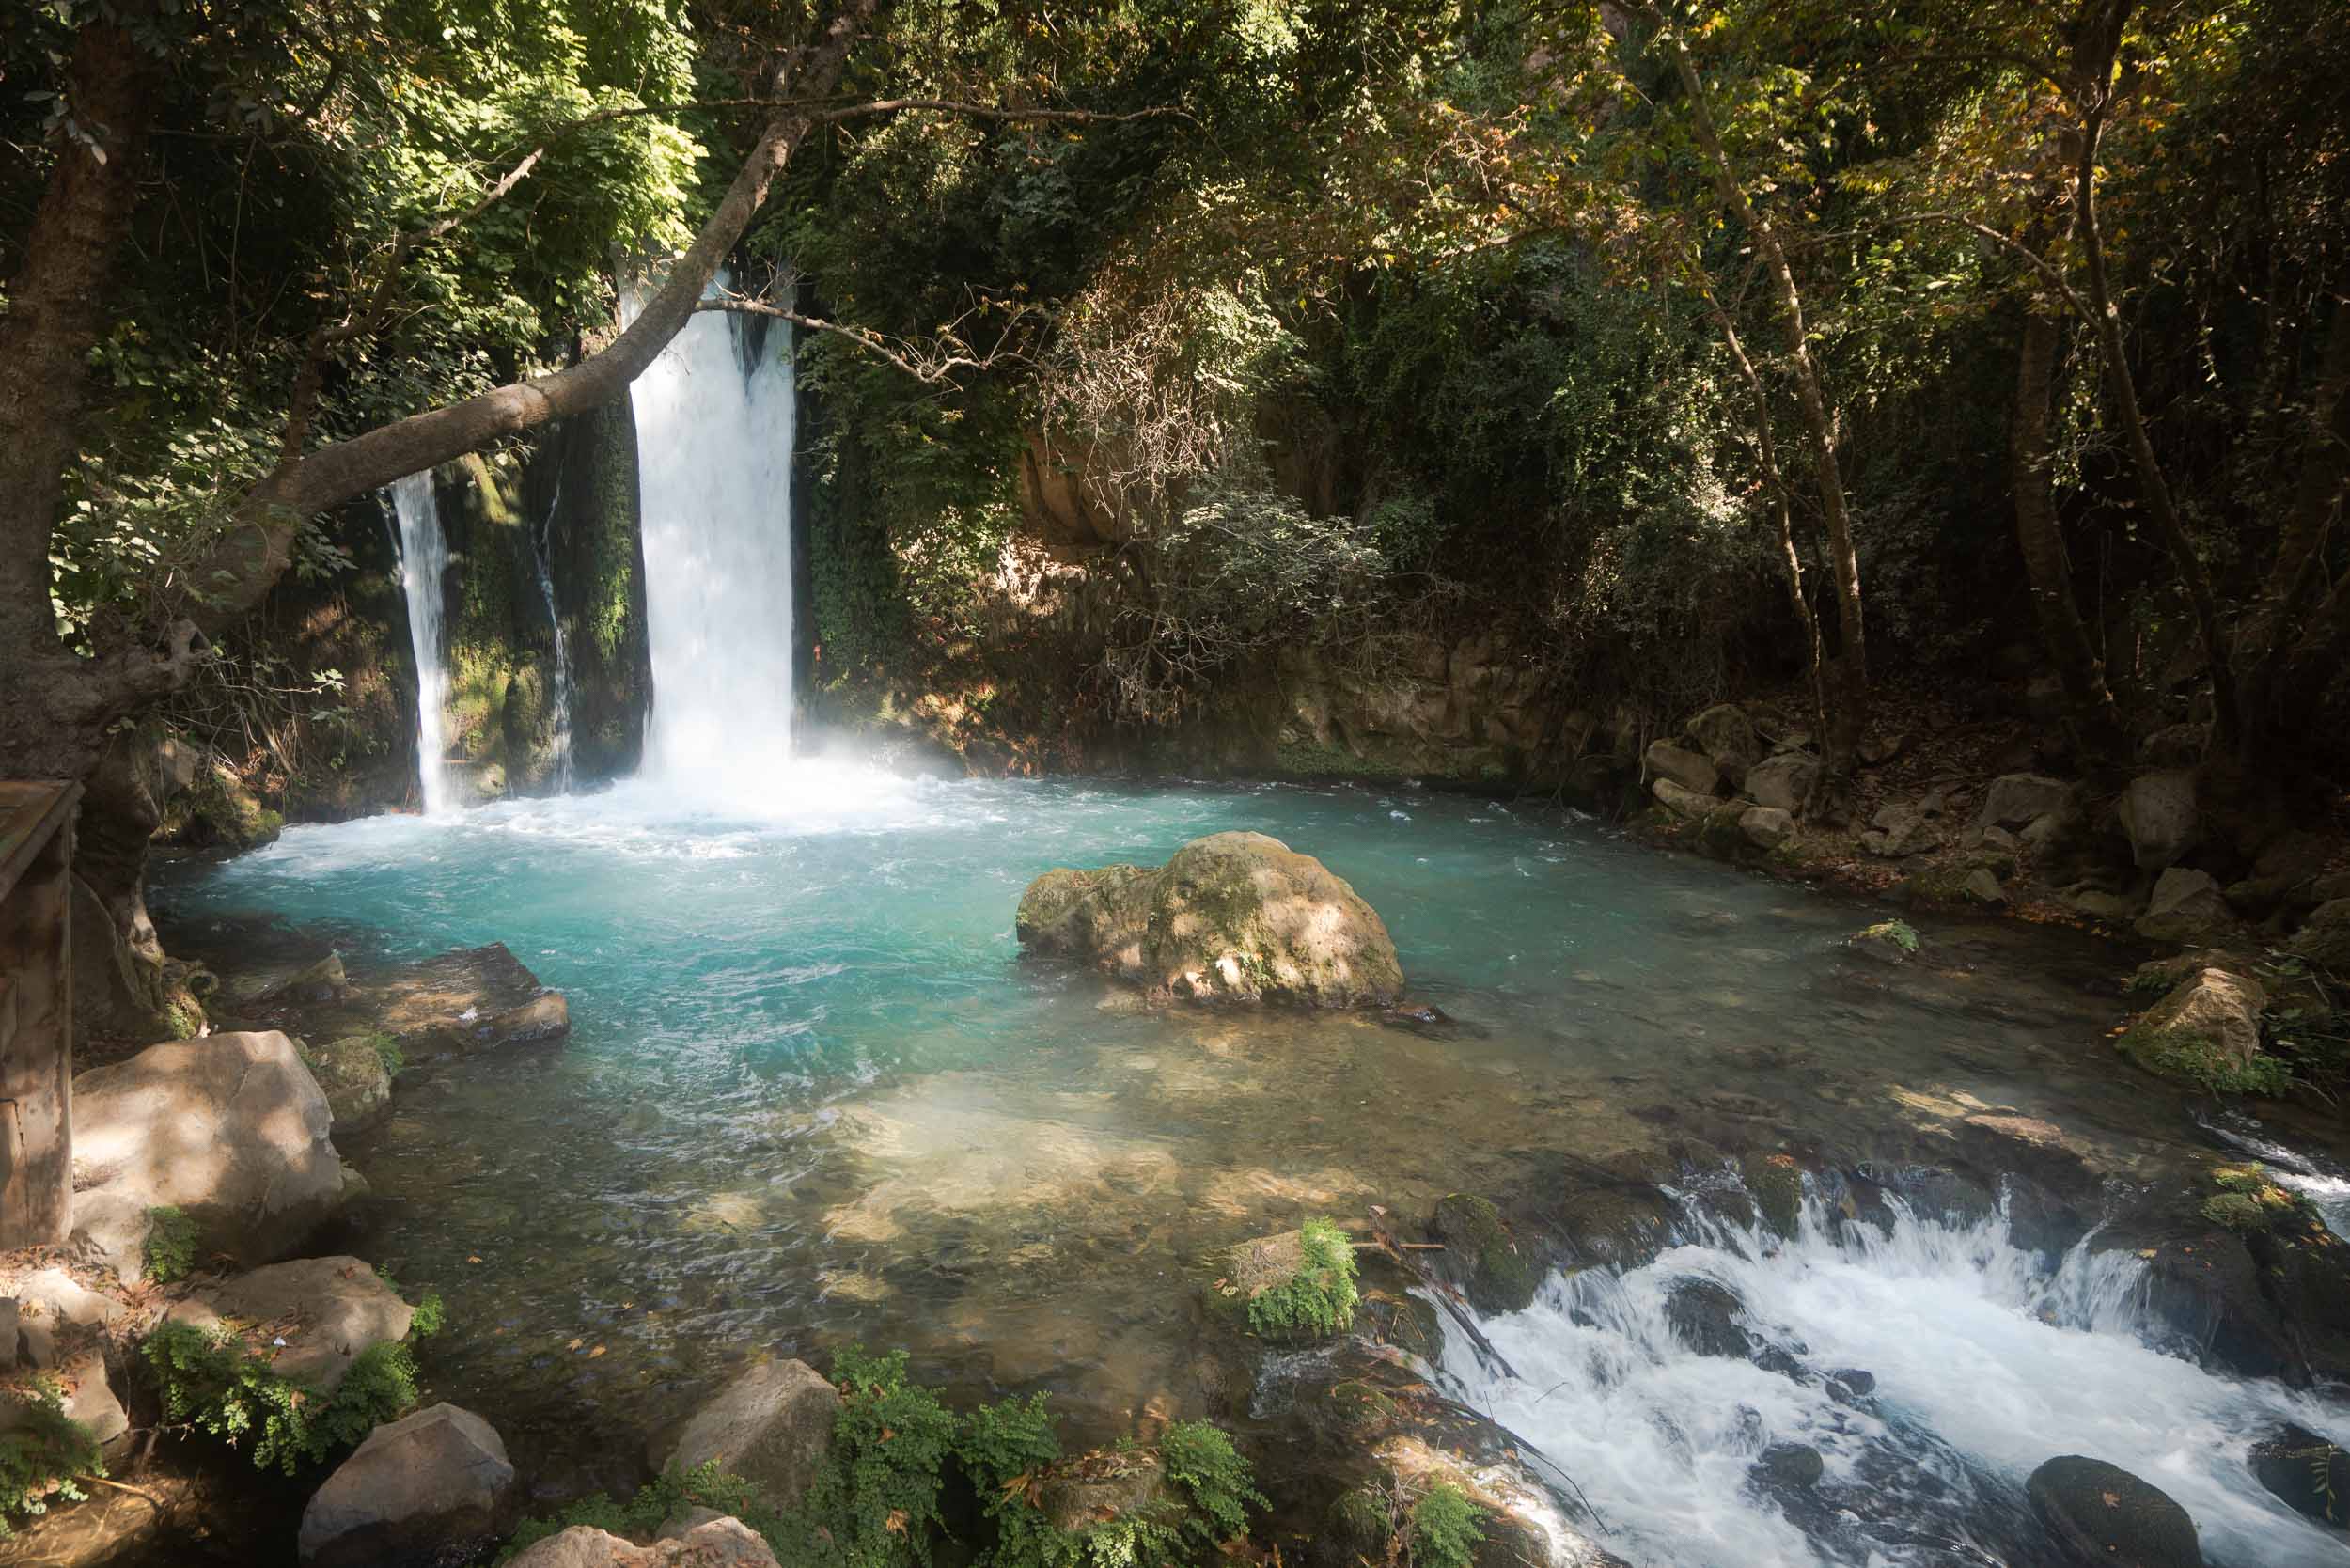 Banias Waterfall in Israel.